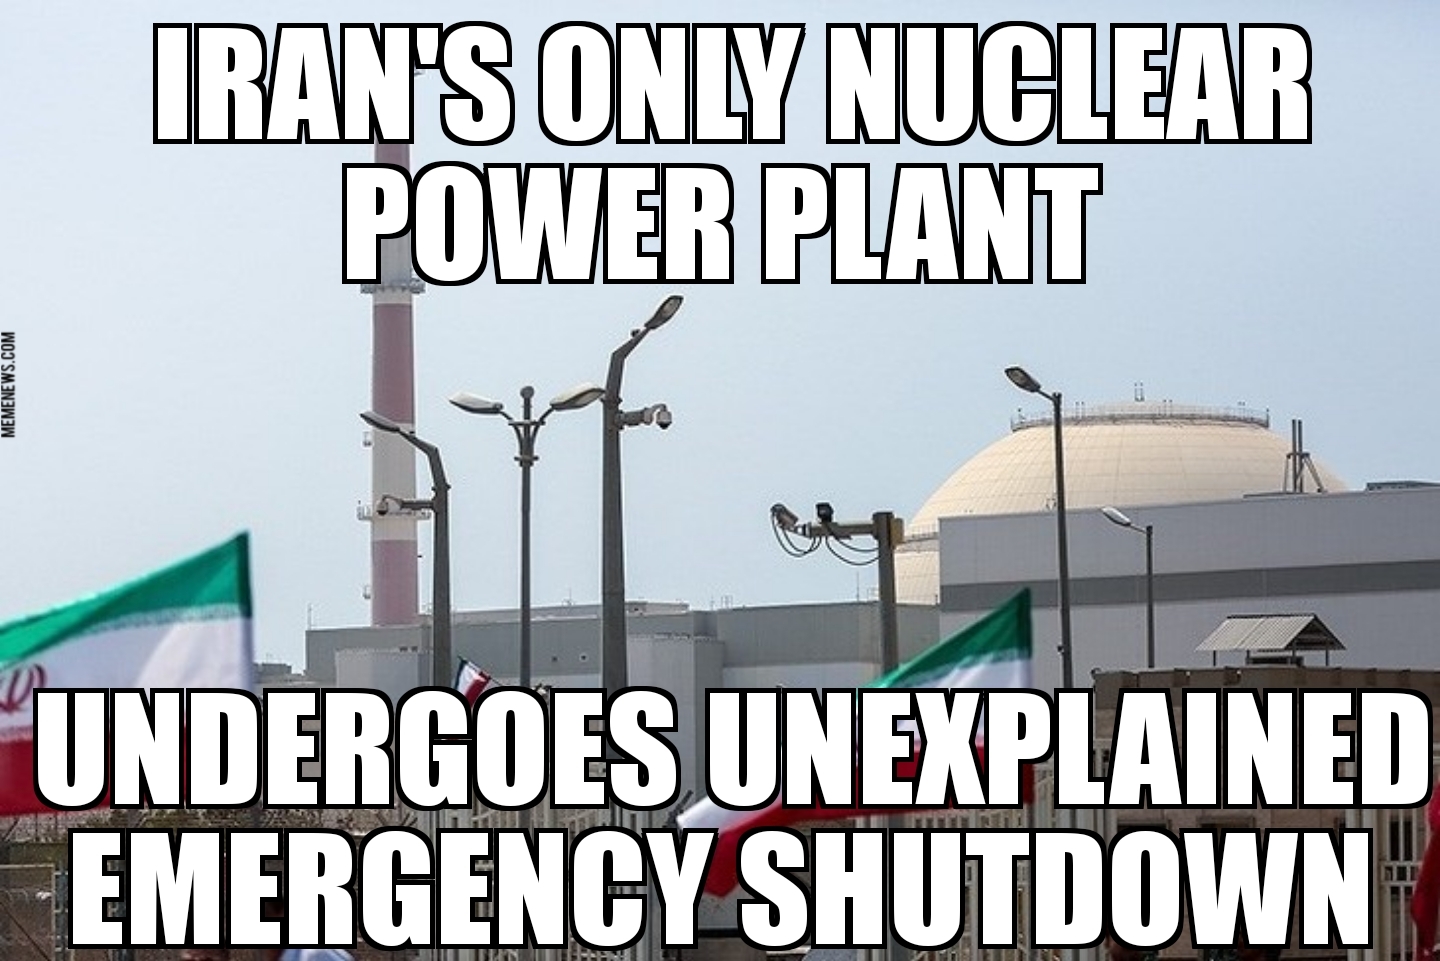 Iran nuclear plant shutdown